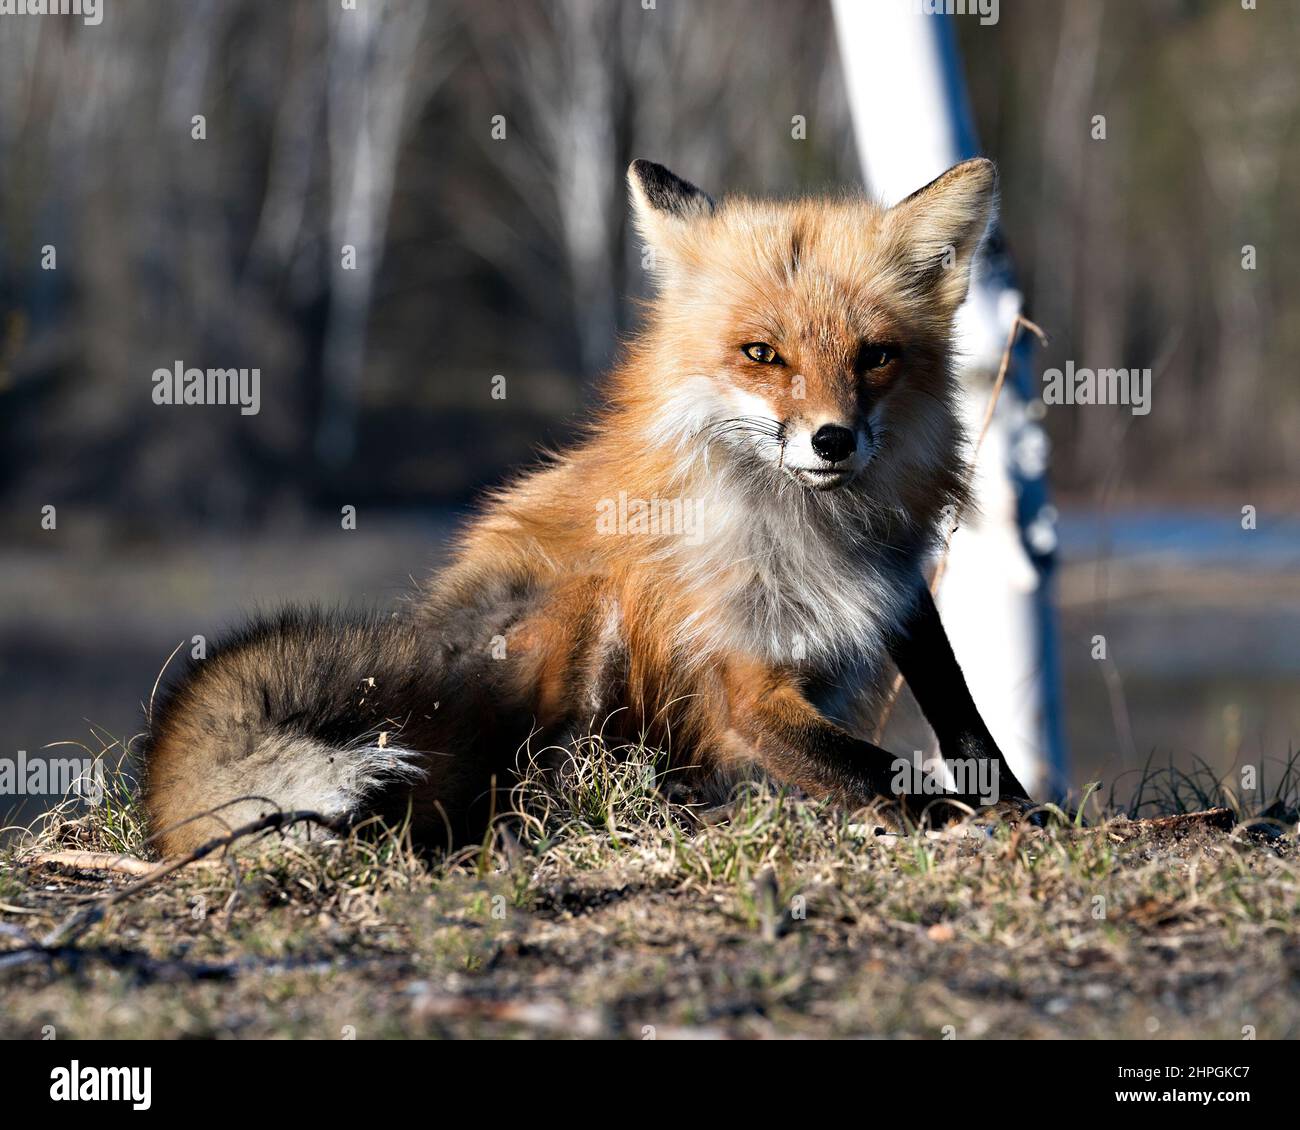 Red Fox seduta con uno sfondo sfocato in primavera nel suo ambiente e habitat che mostra la coda folta. Immagine Fox. Immagine. Verticale. Foto Stock